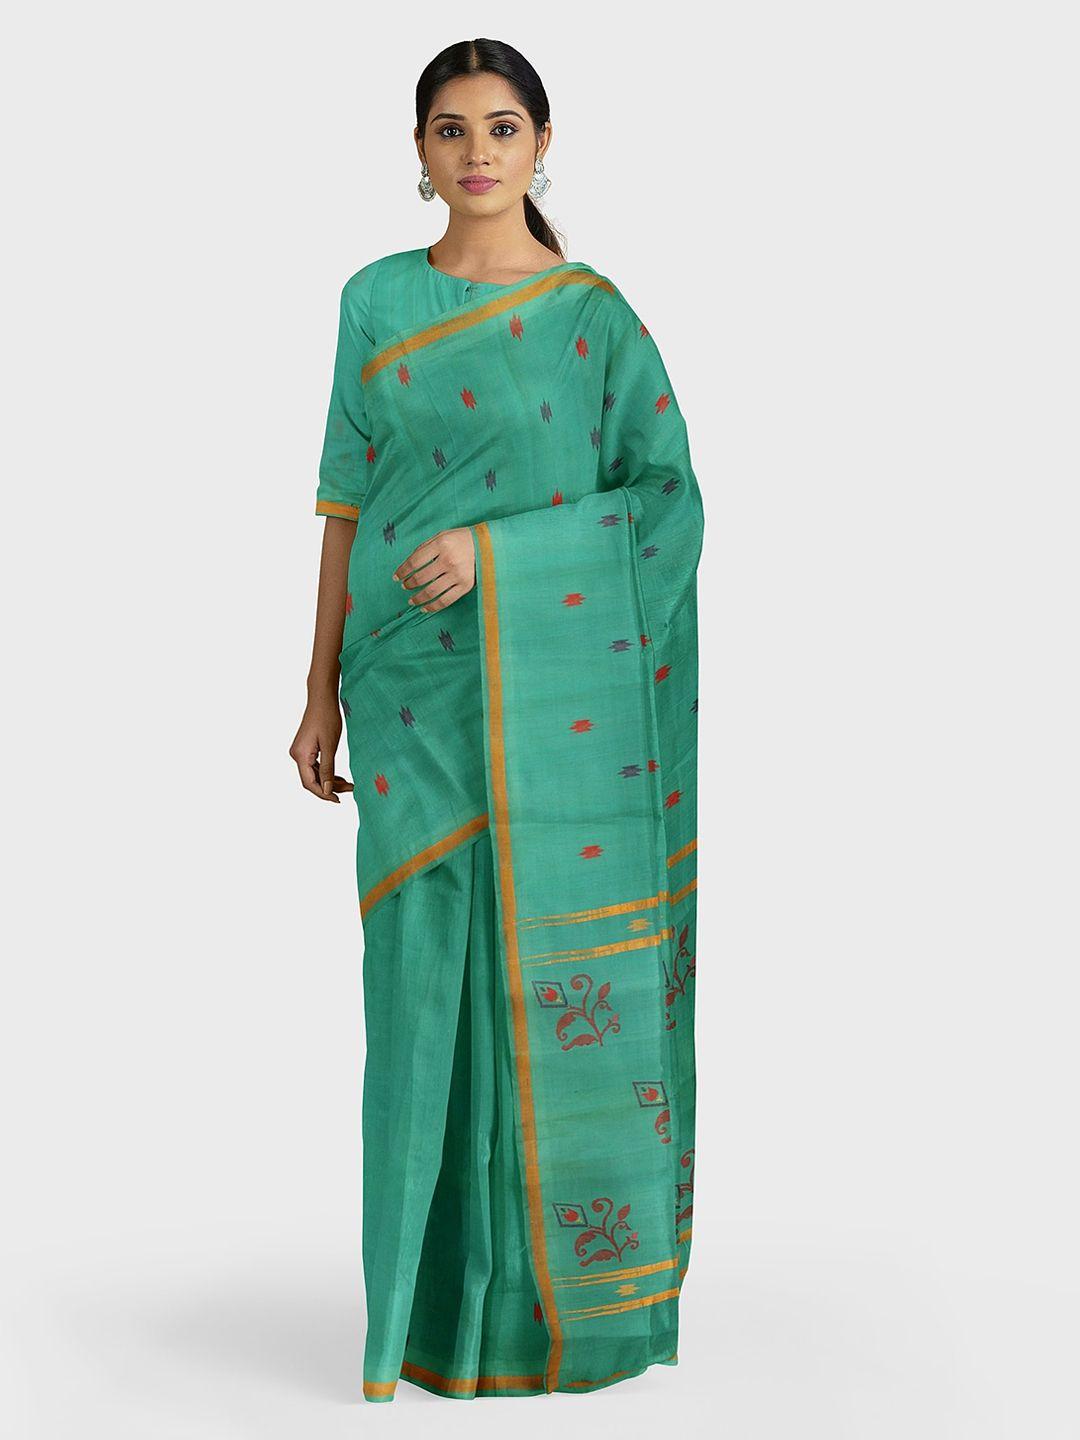 apco green & red pure cotton woven design uppada saree